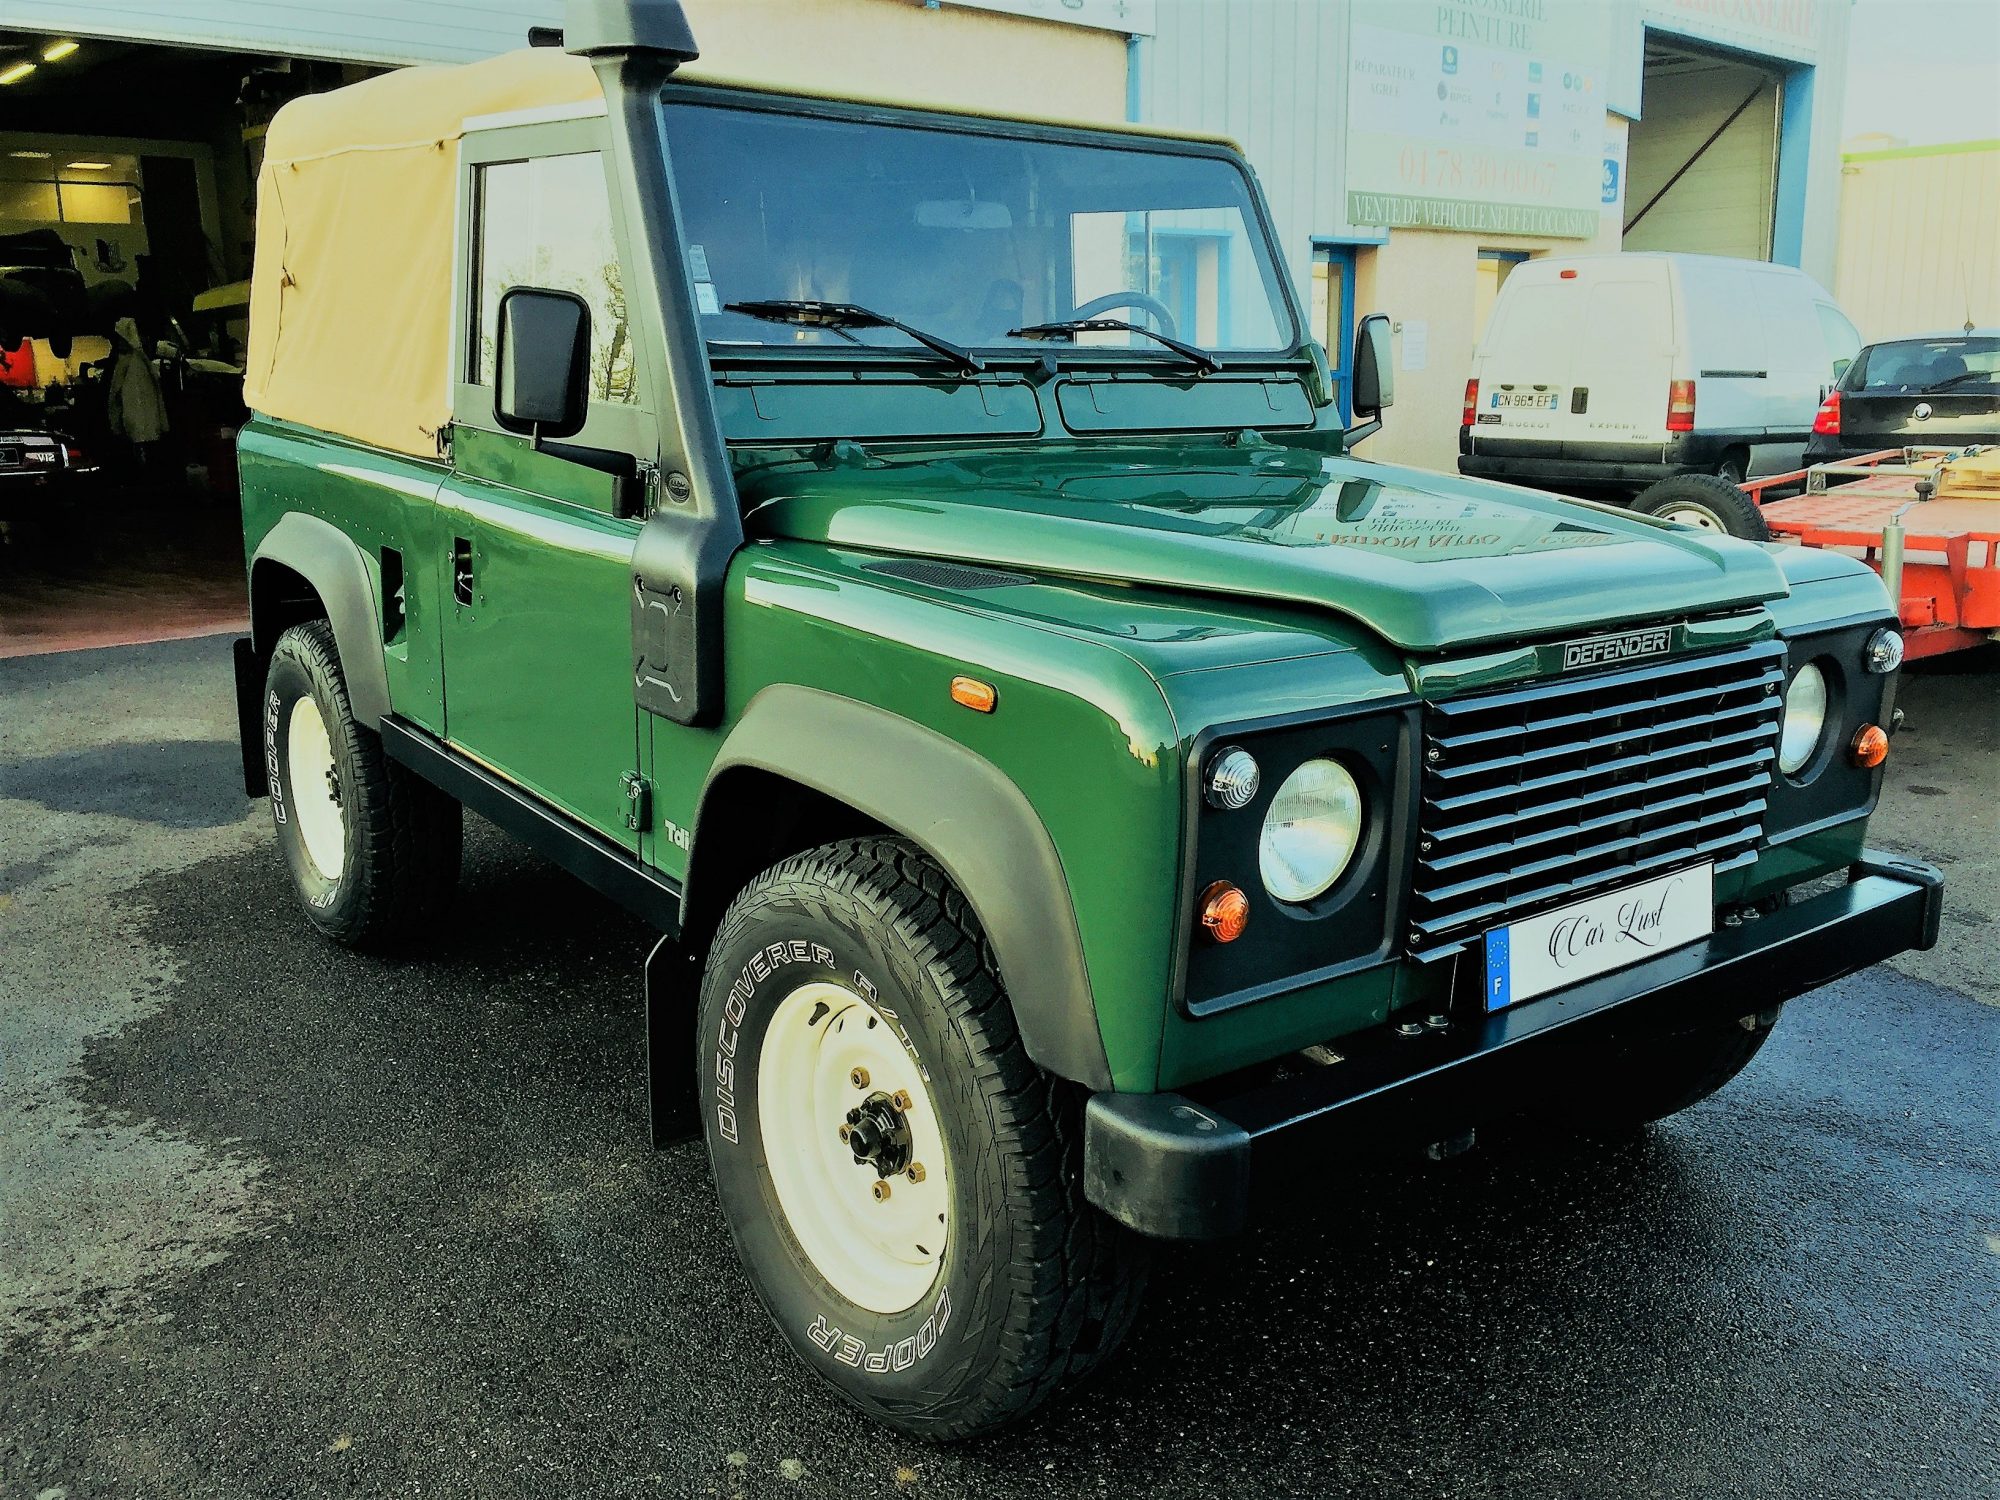 Land Rover Defender 1993